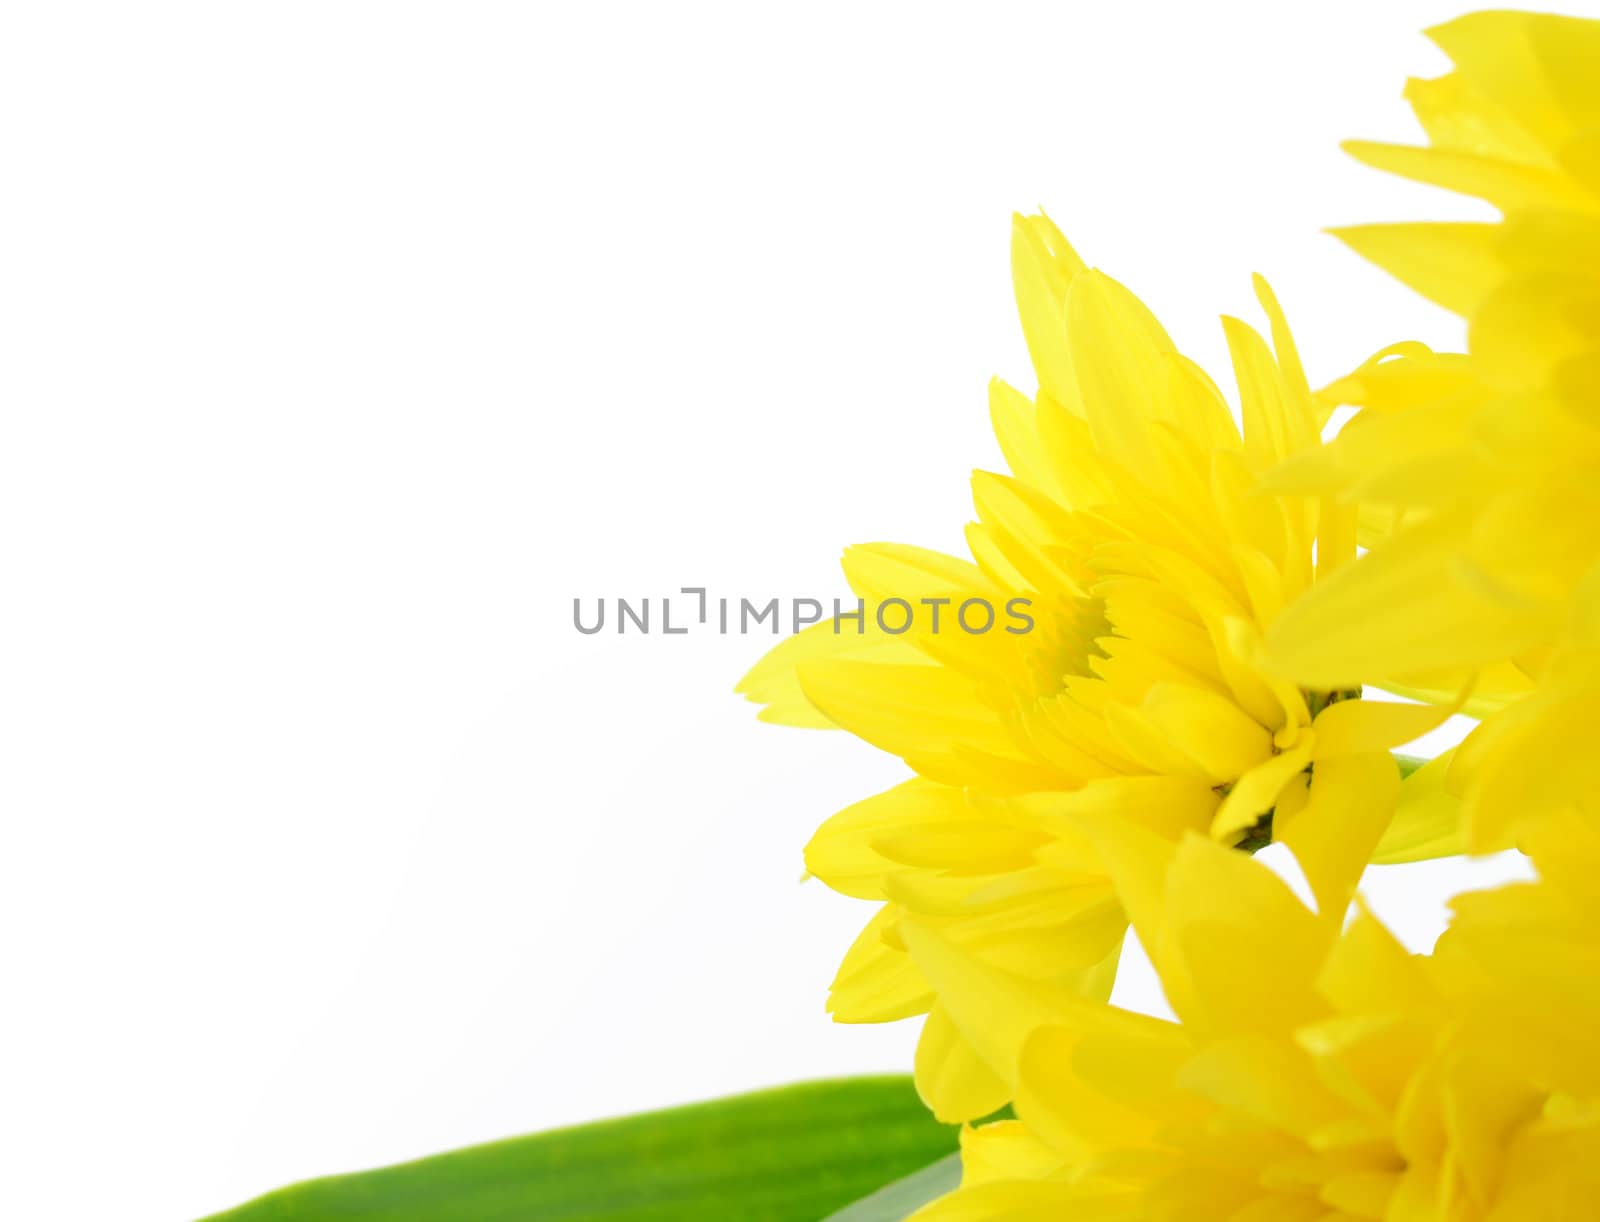 chrysanthemum by antpkr